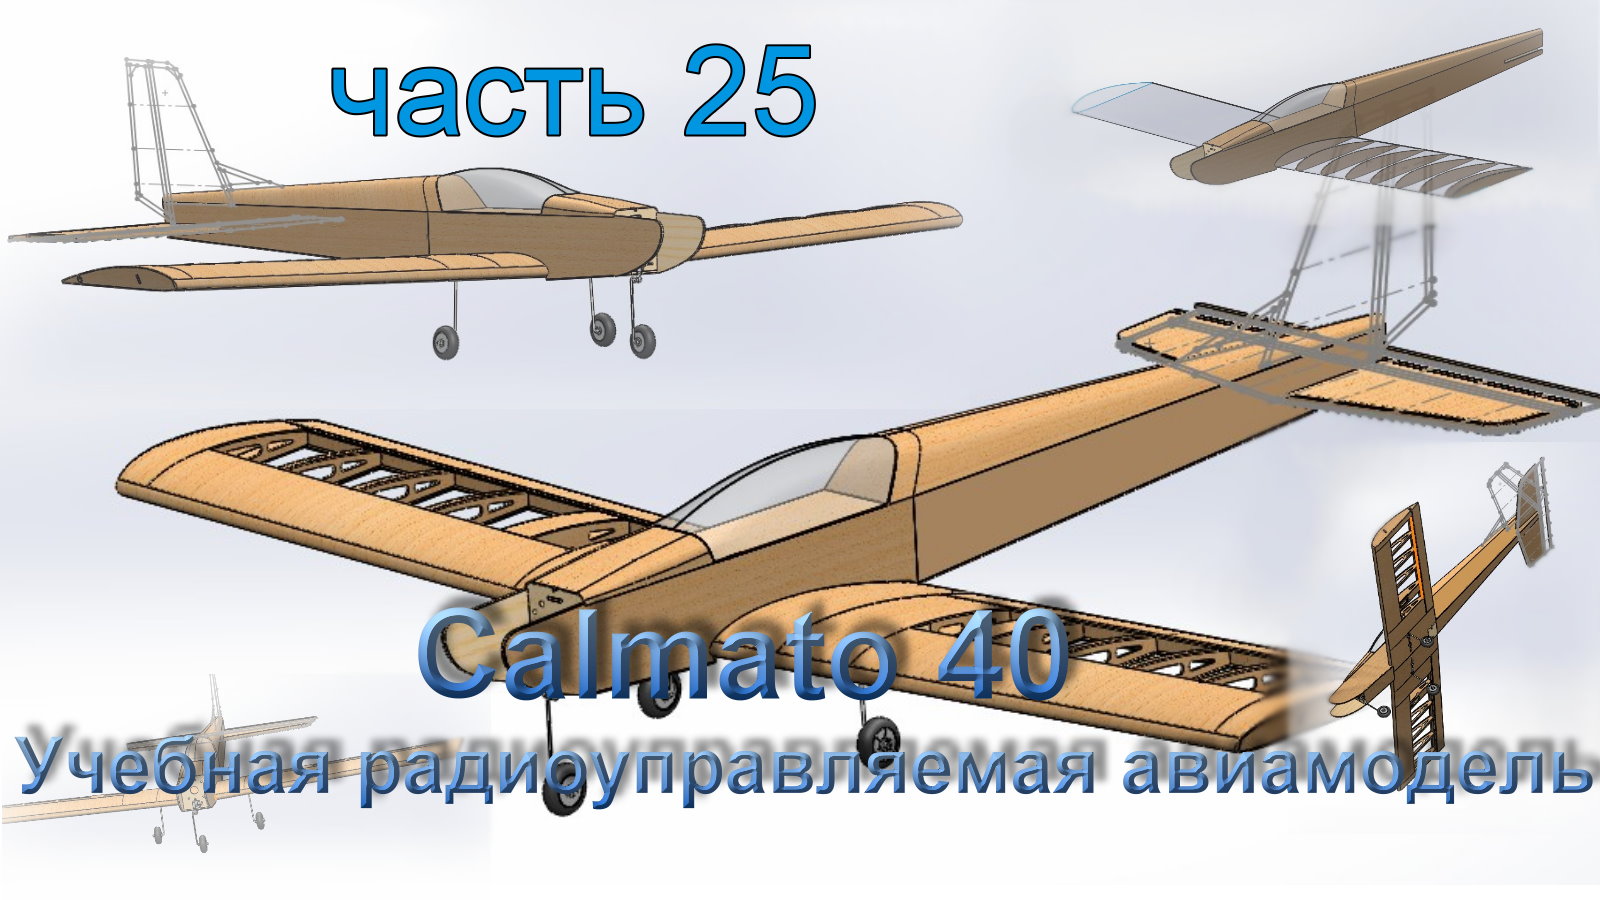 Учебная радиоуправляемая авиамодель Calmato 40 (часть 25)